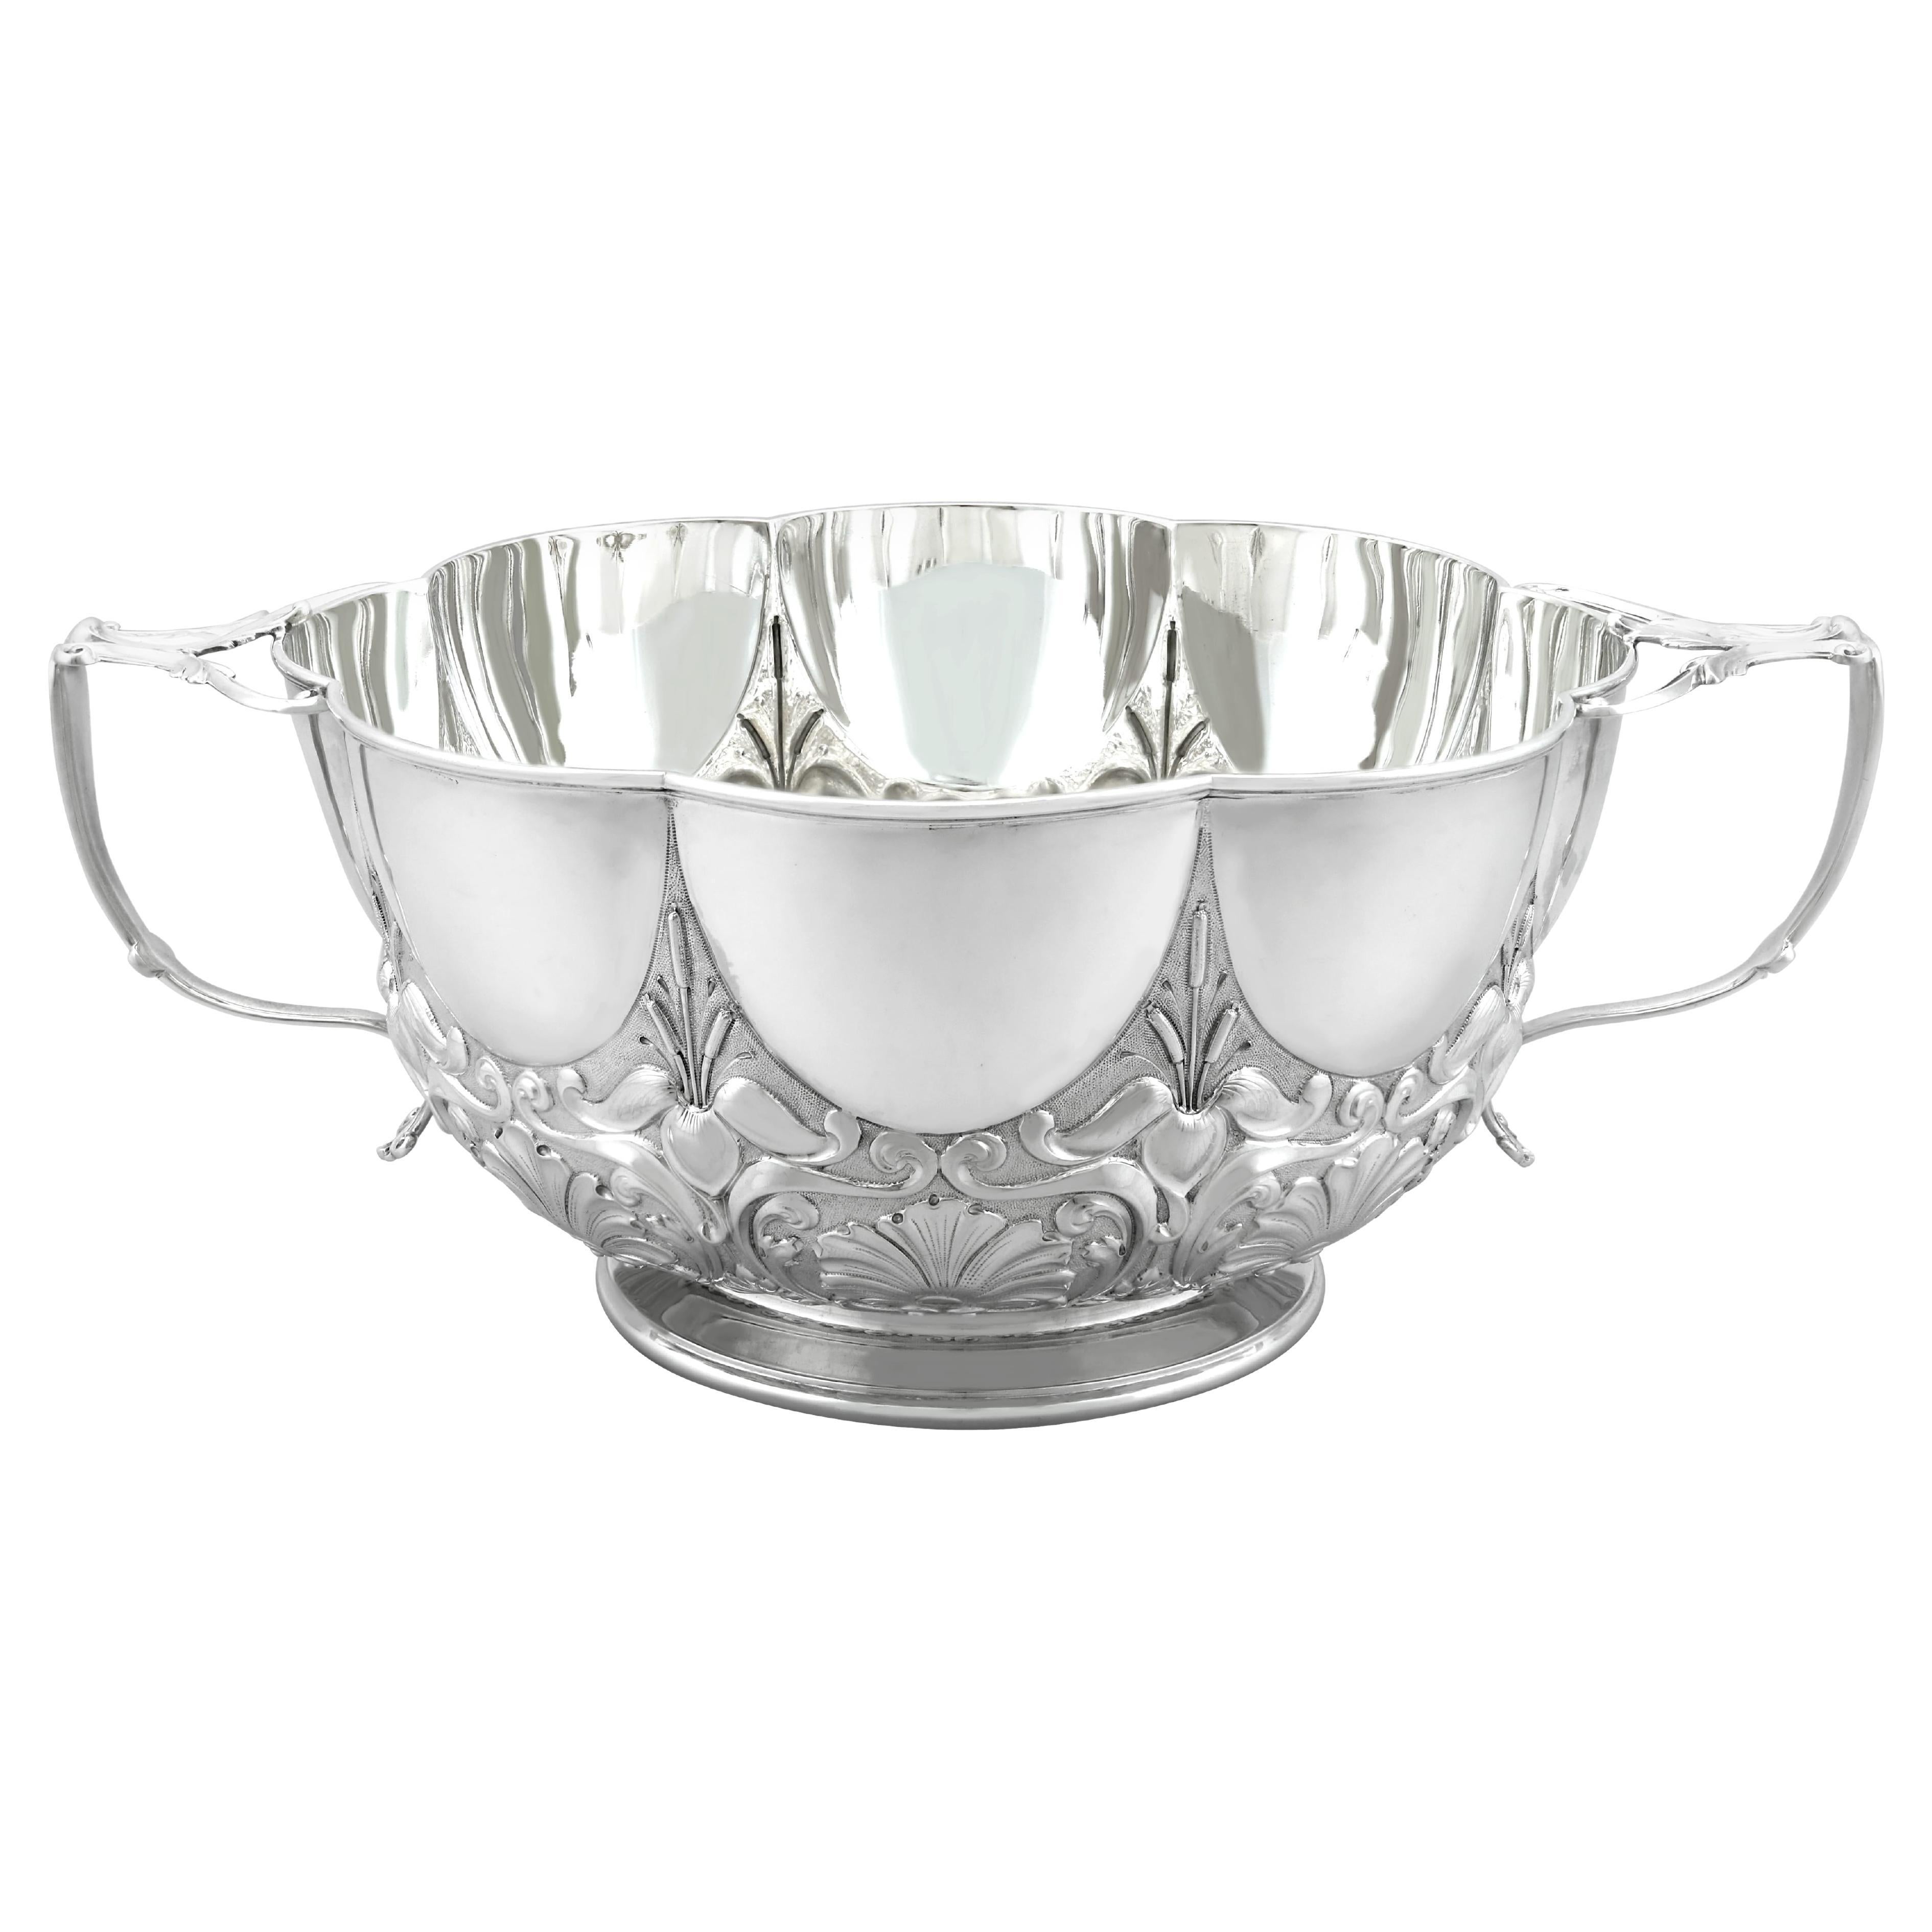 Edwardian English Sterling Silver Bowl Art Nouveau Style